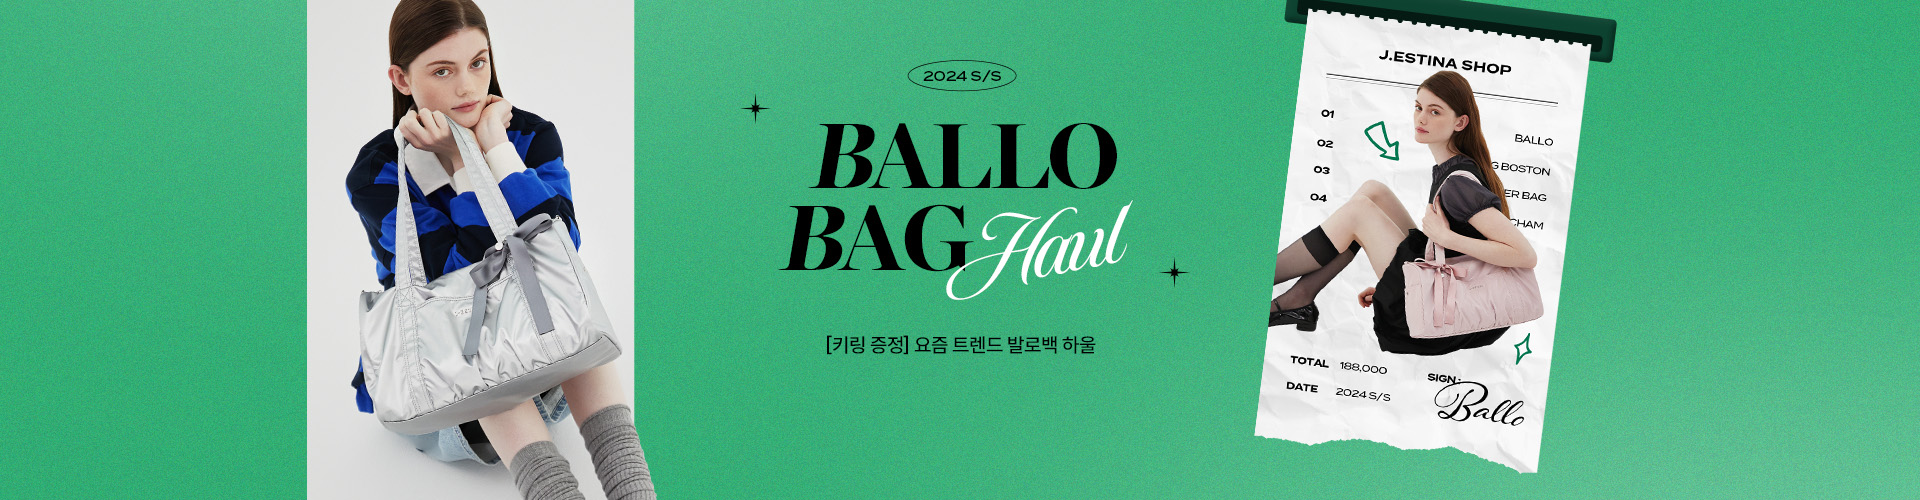 [핸] BALLO BAG HAUL